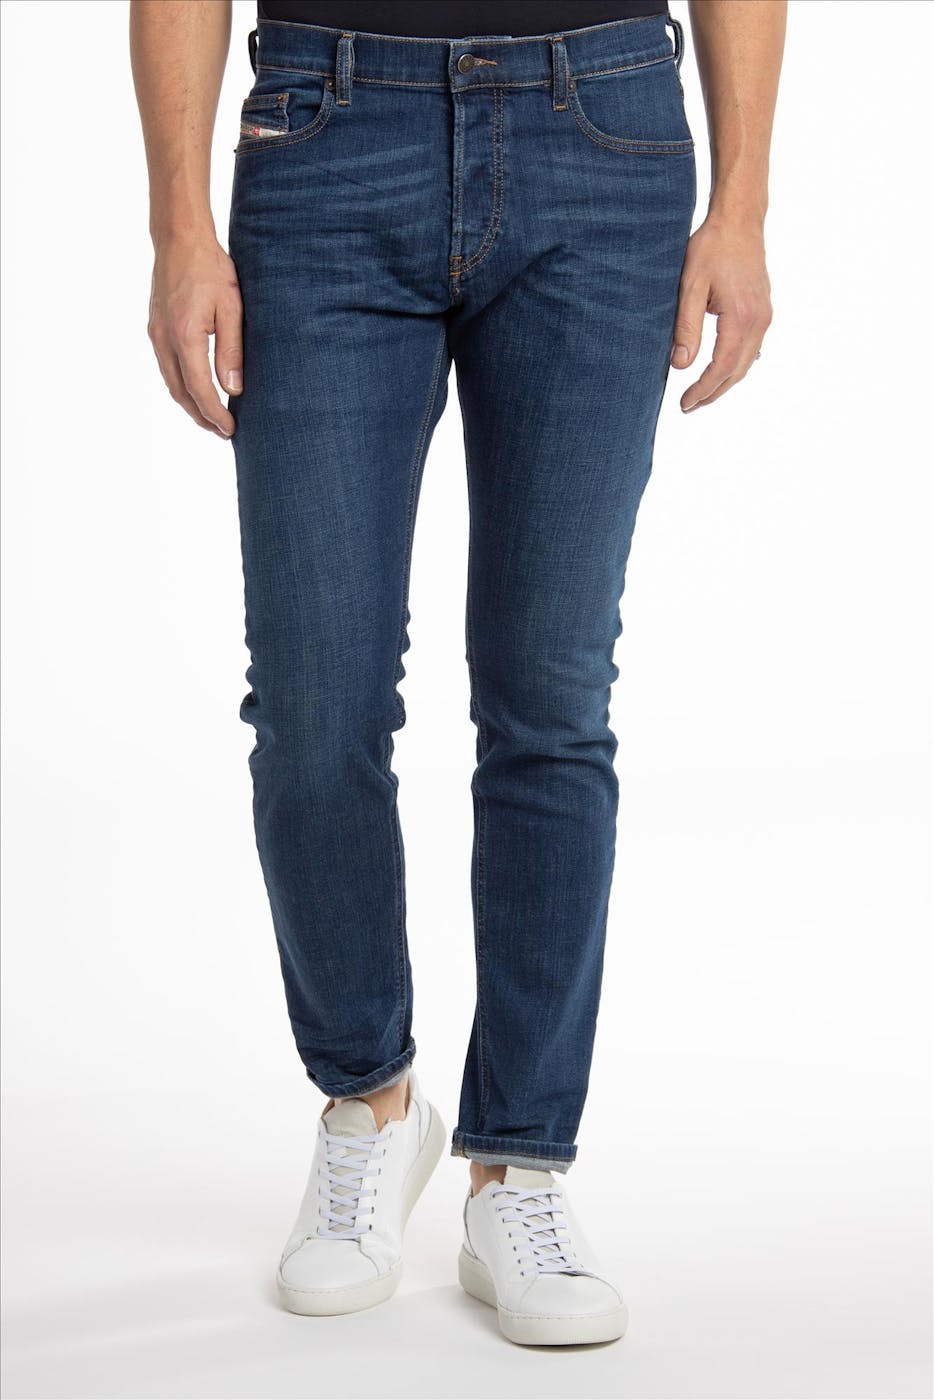 Diesel - Donkerblauwe D-Luster slim tapered jeans